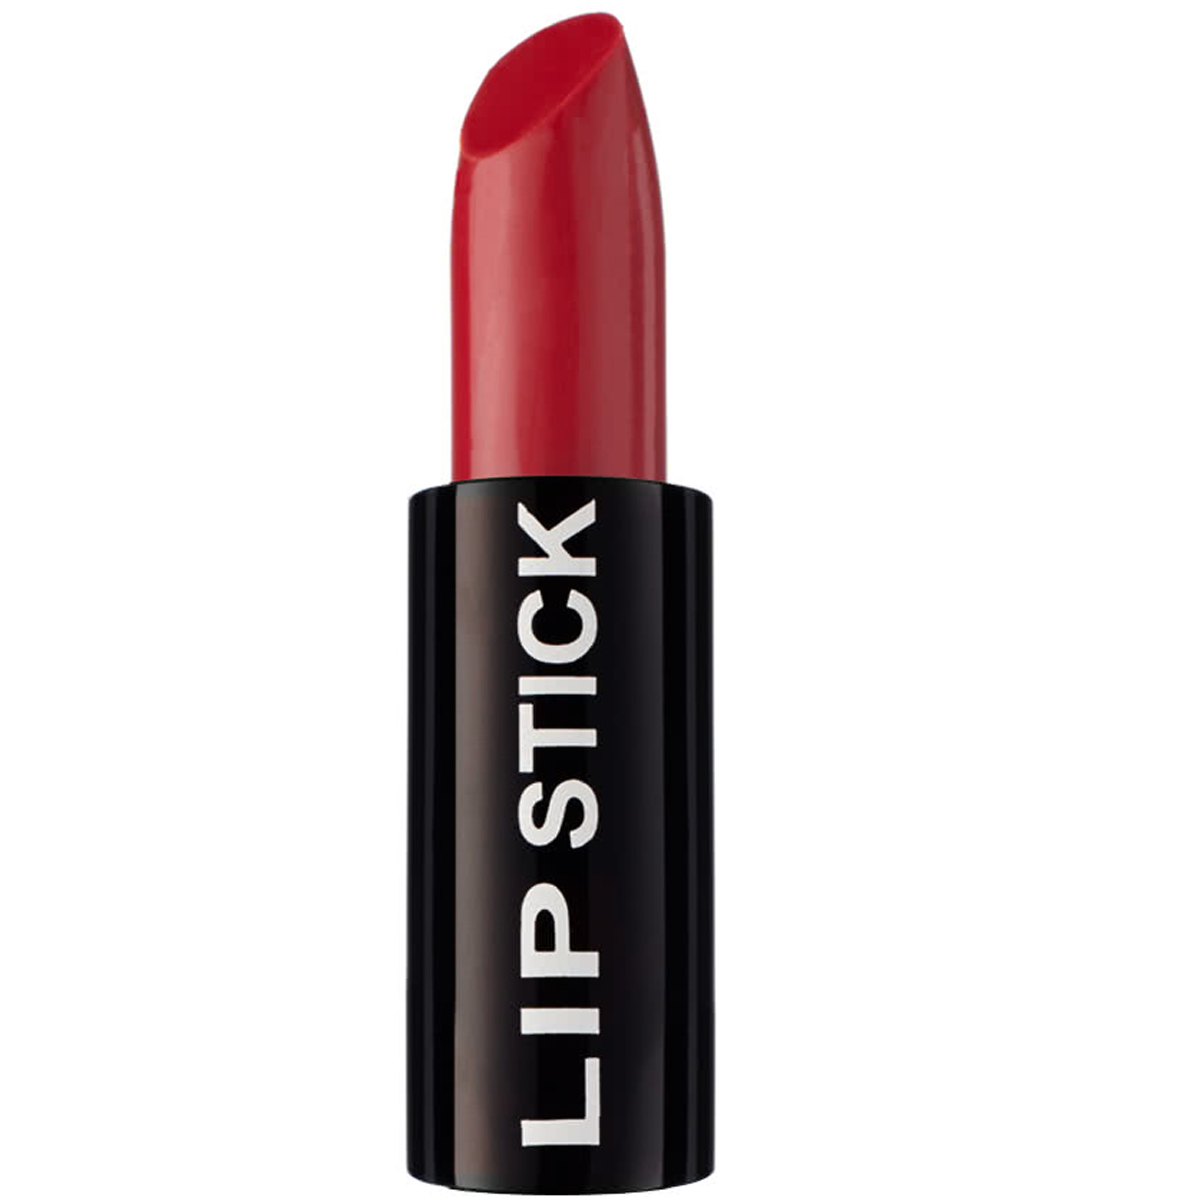 Red Lipstick by StarGazer • the dark store™